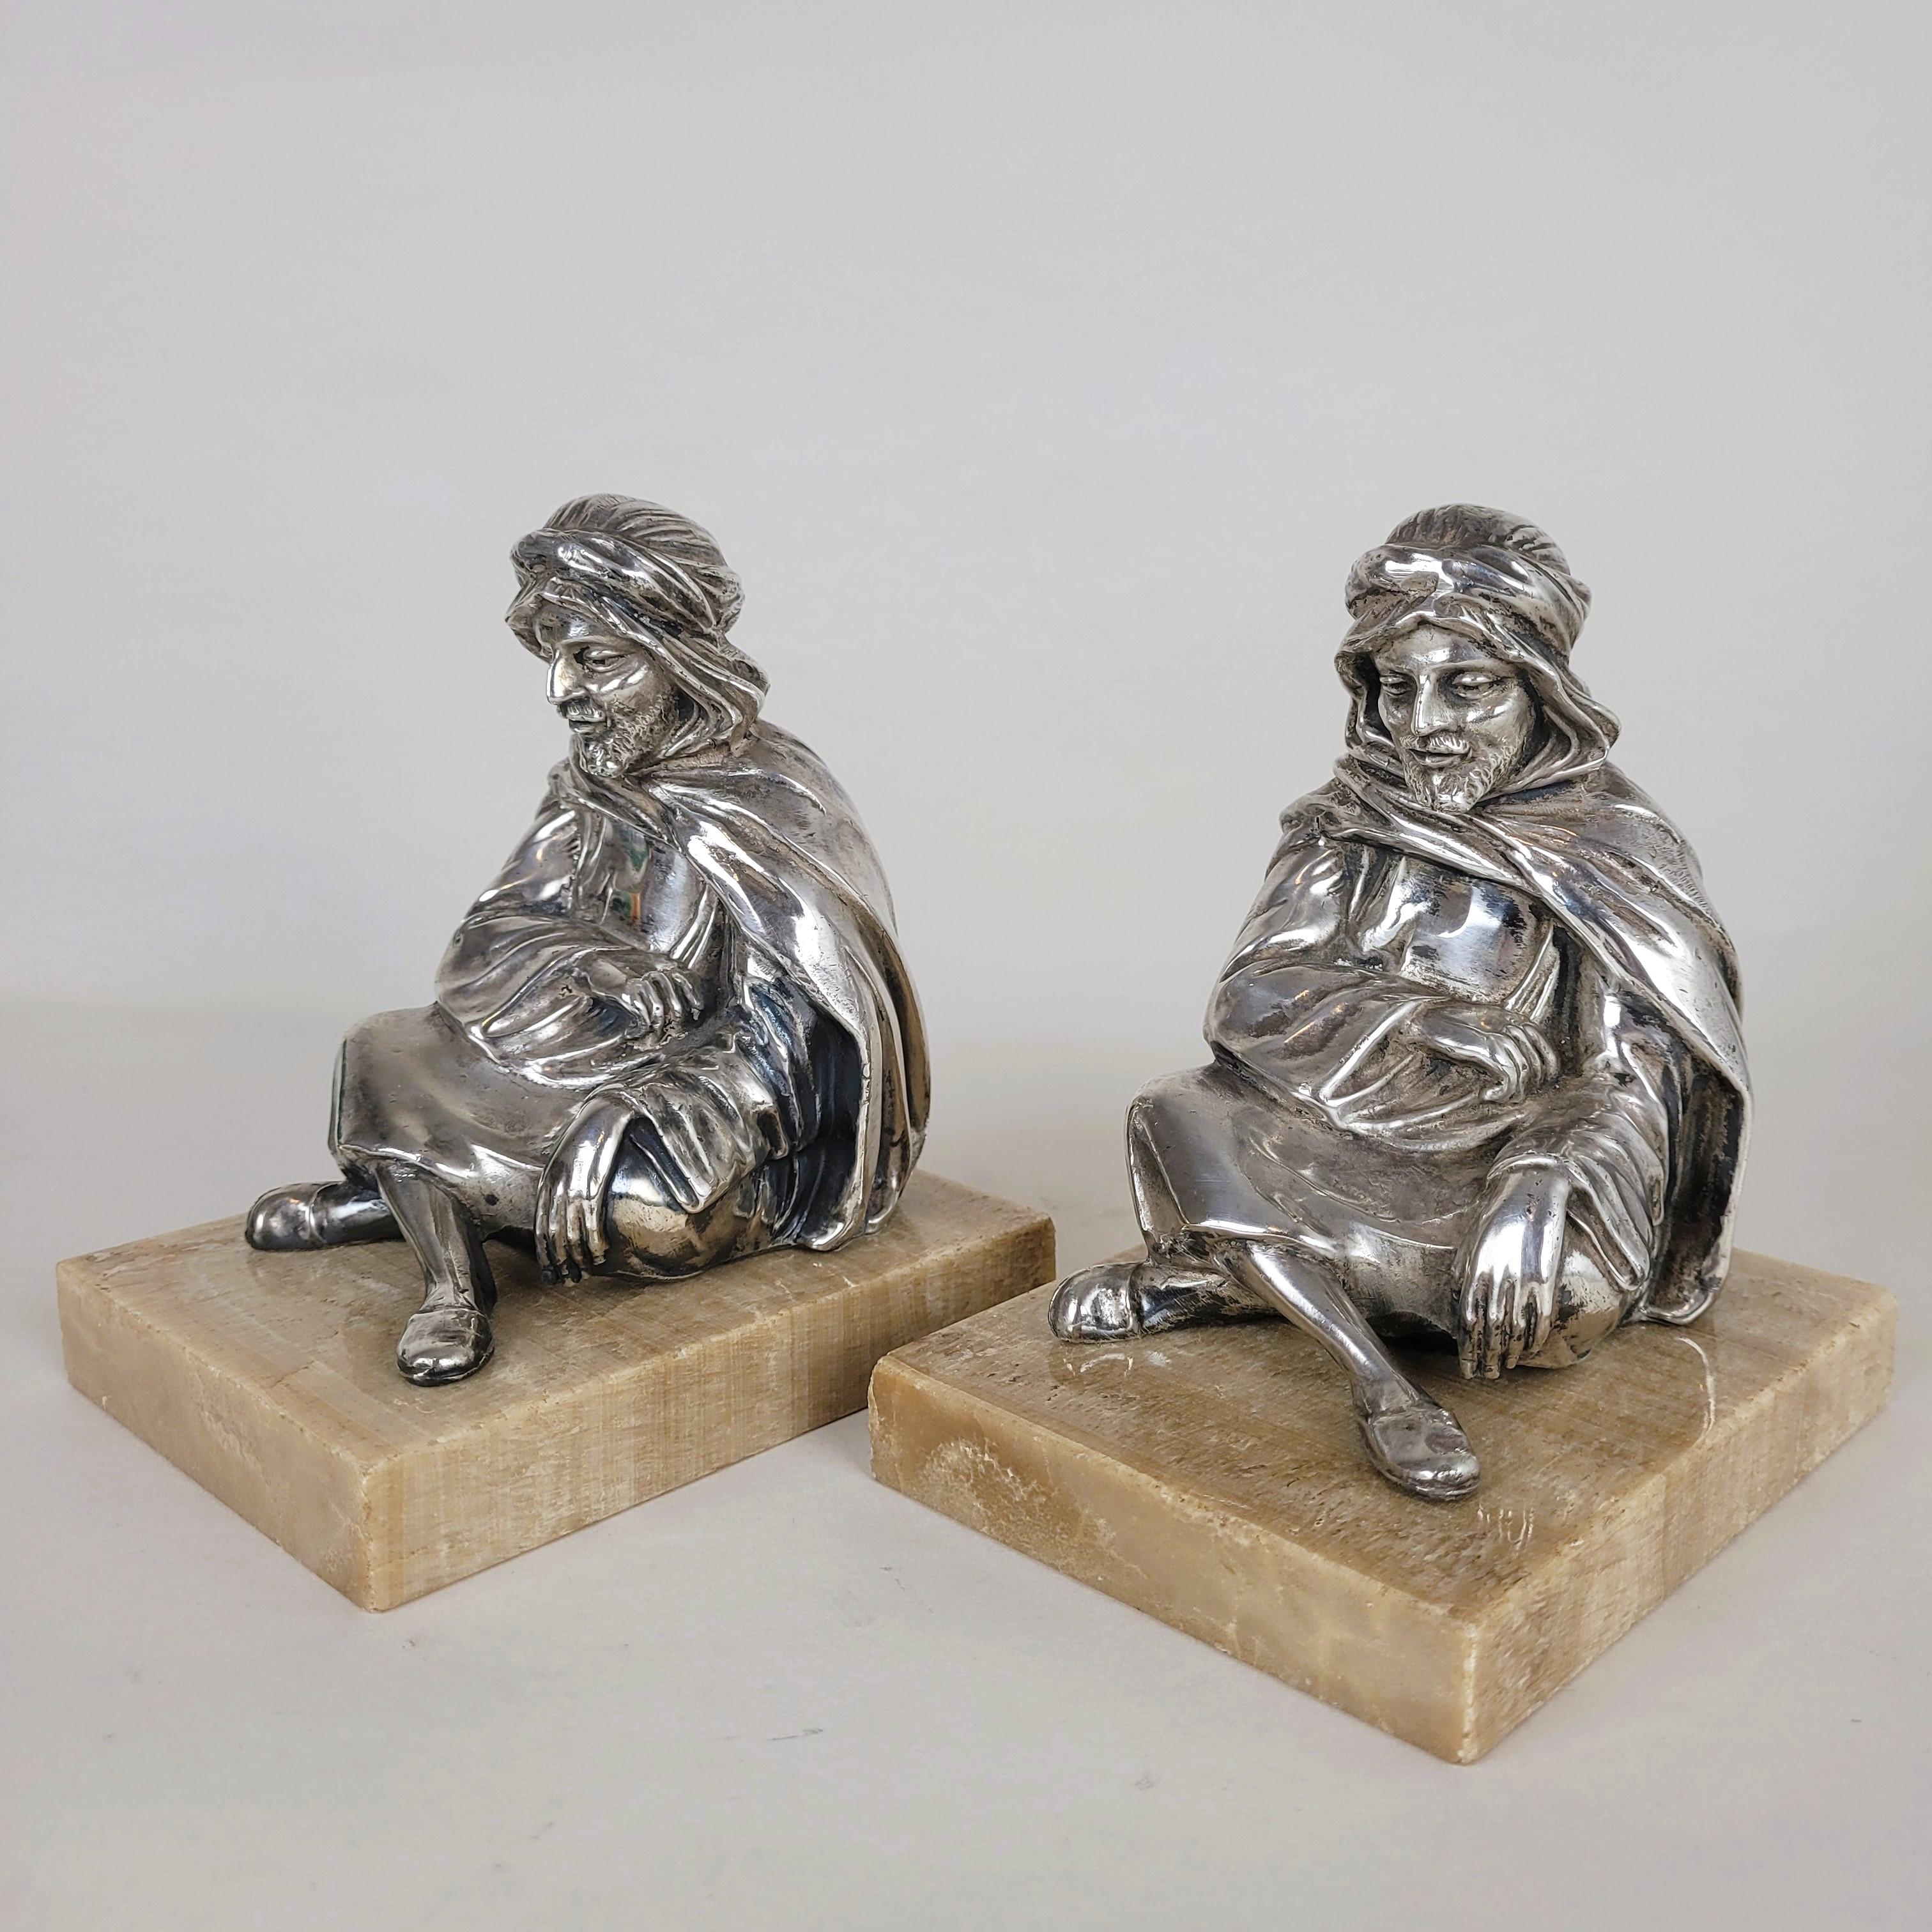 Paire de serre-livres représentant des orientaux assis, enveloppés dans leurs écharpes.

Figures en métal argenté, sur une base en onyx

Bon état général, petits éclats sur le marbre

Hauteur 13.5 cm
9.5 x 12.5 cm